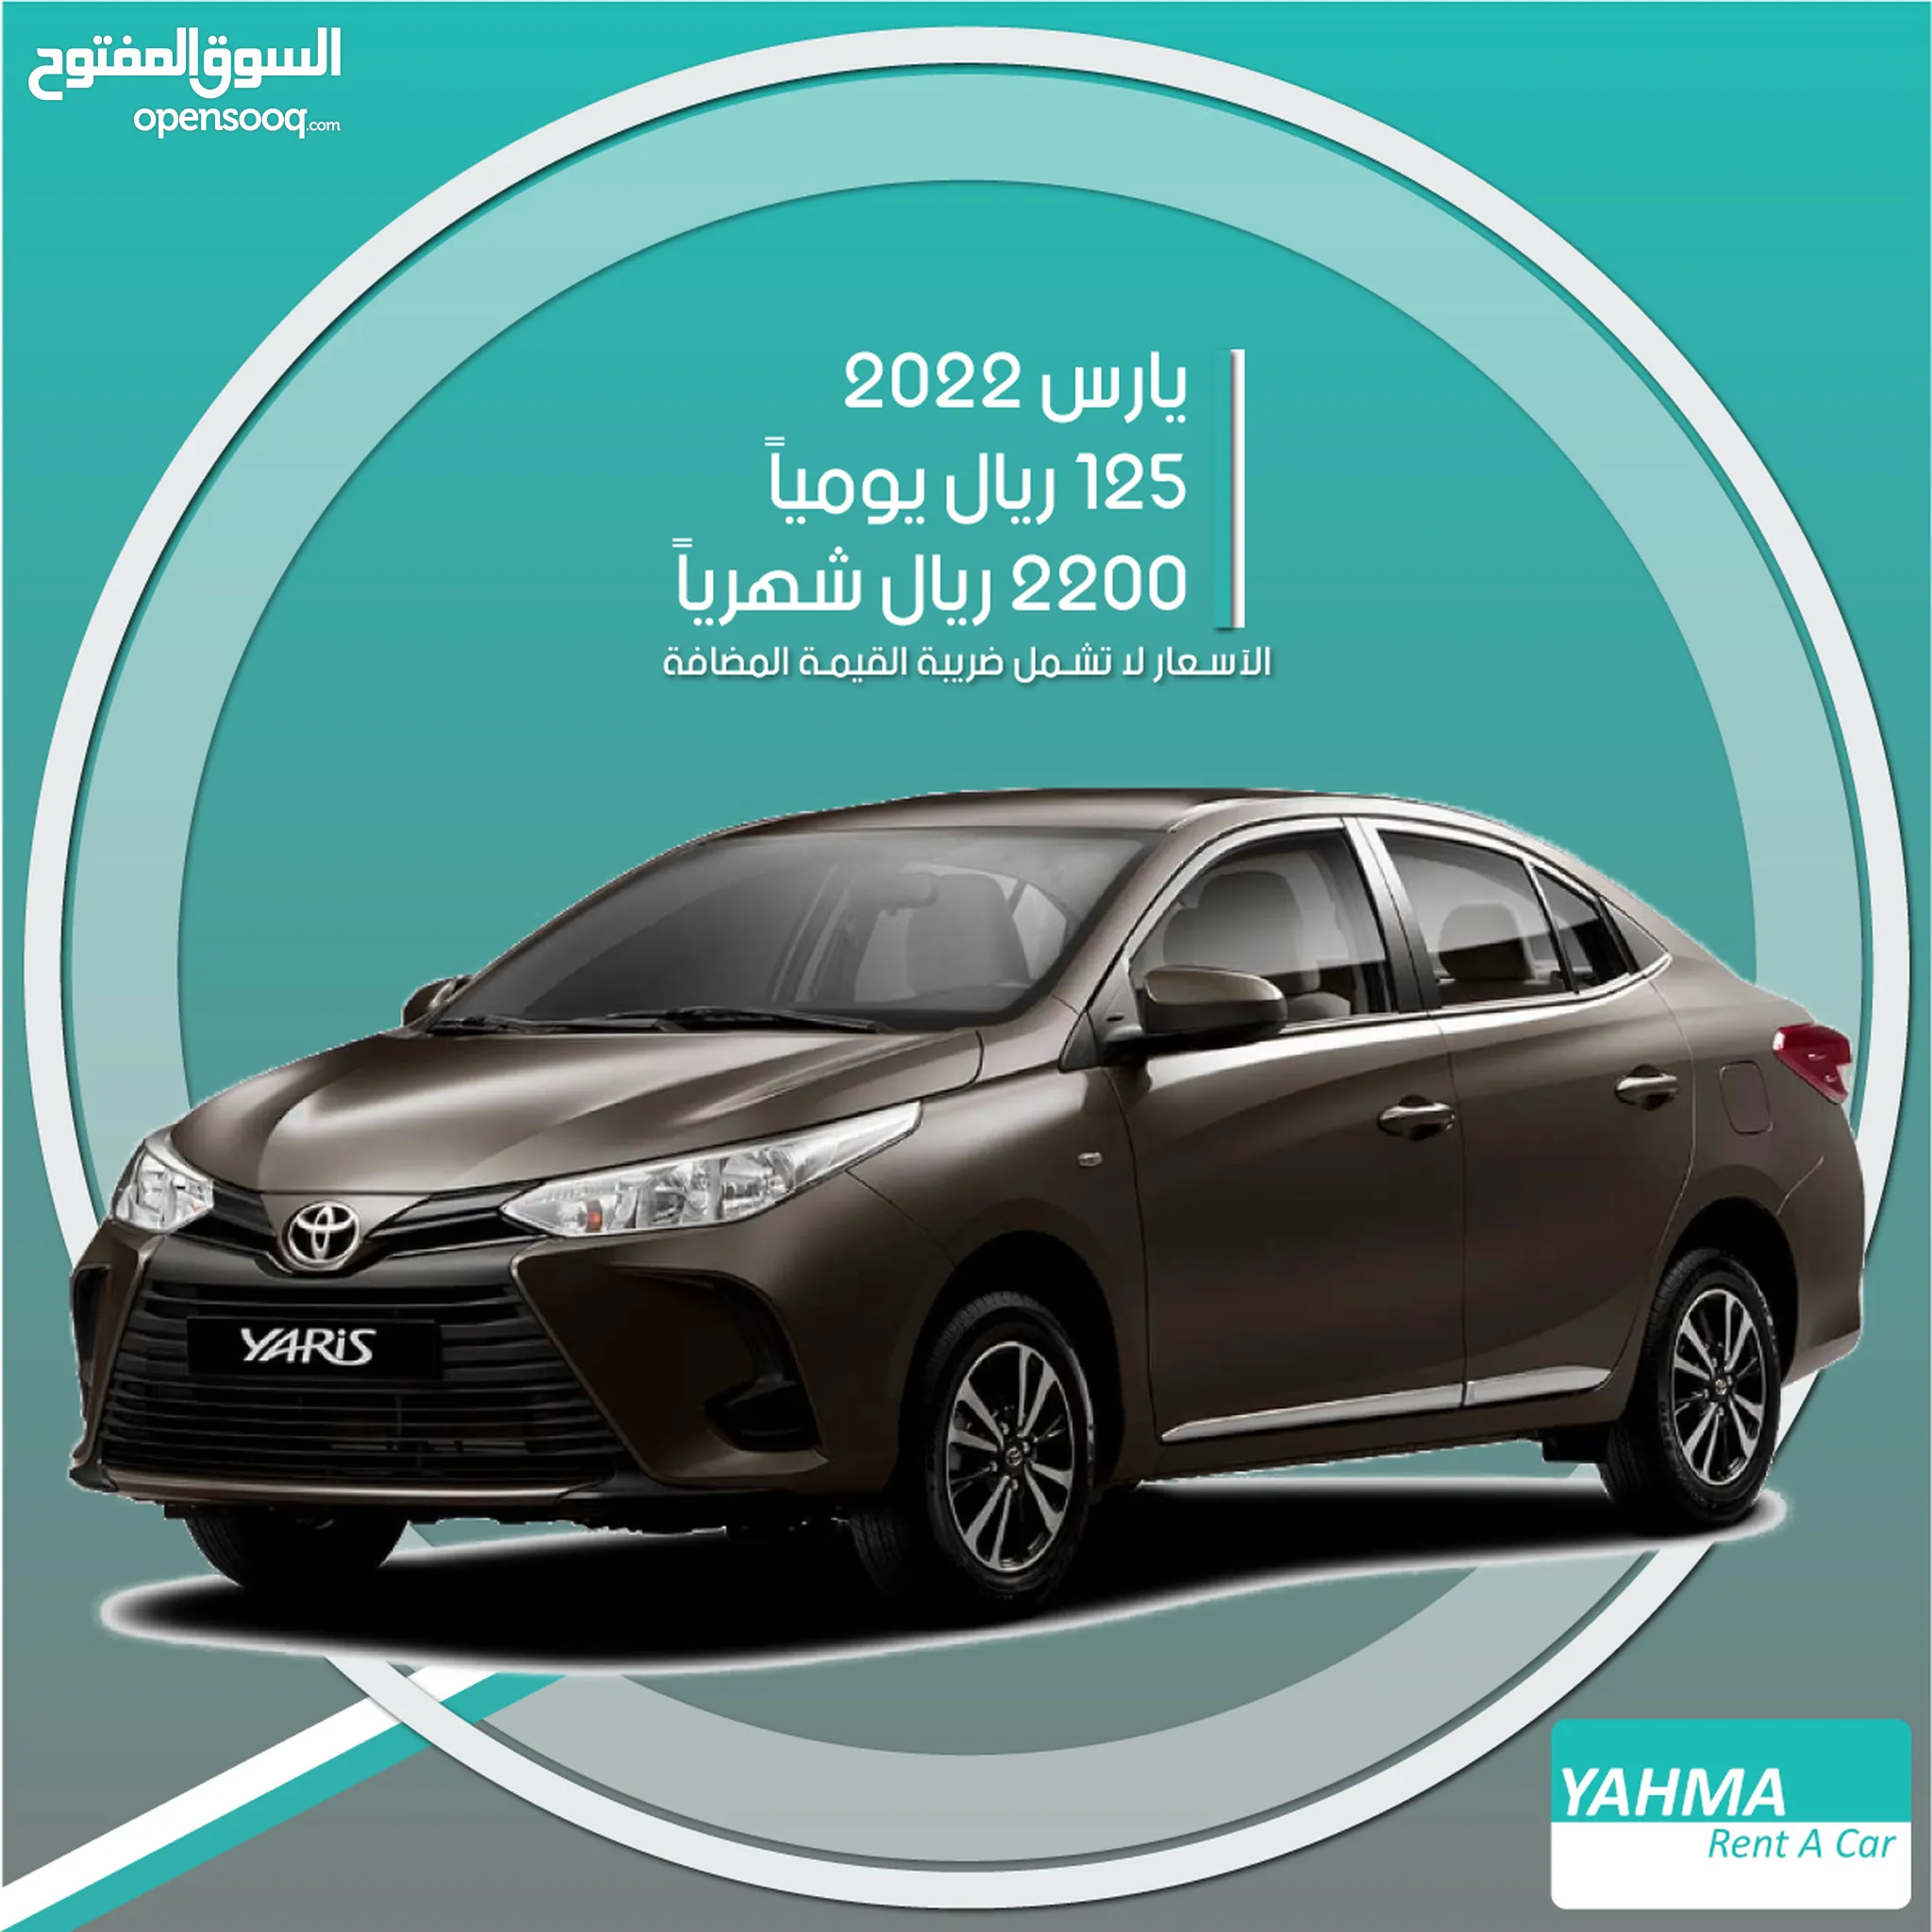 تأجير سيارات تويوتا في الرياض - ايجار سيارات تويوتا - يومي, شهري : أفضل سعر  | السوق المفتوح